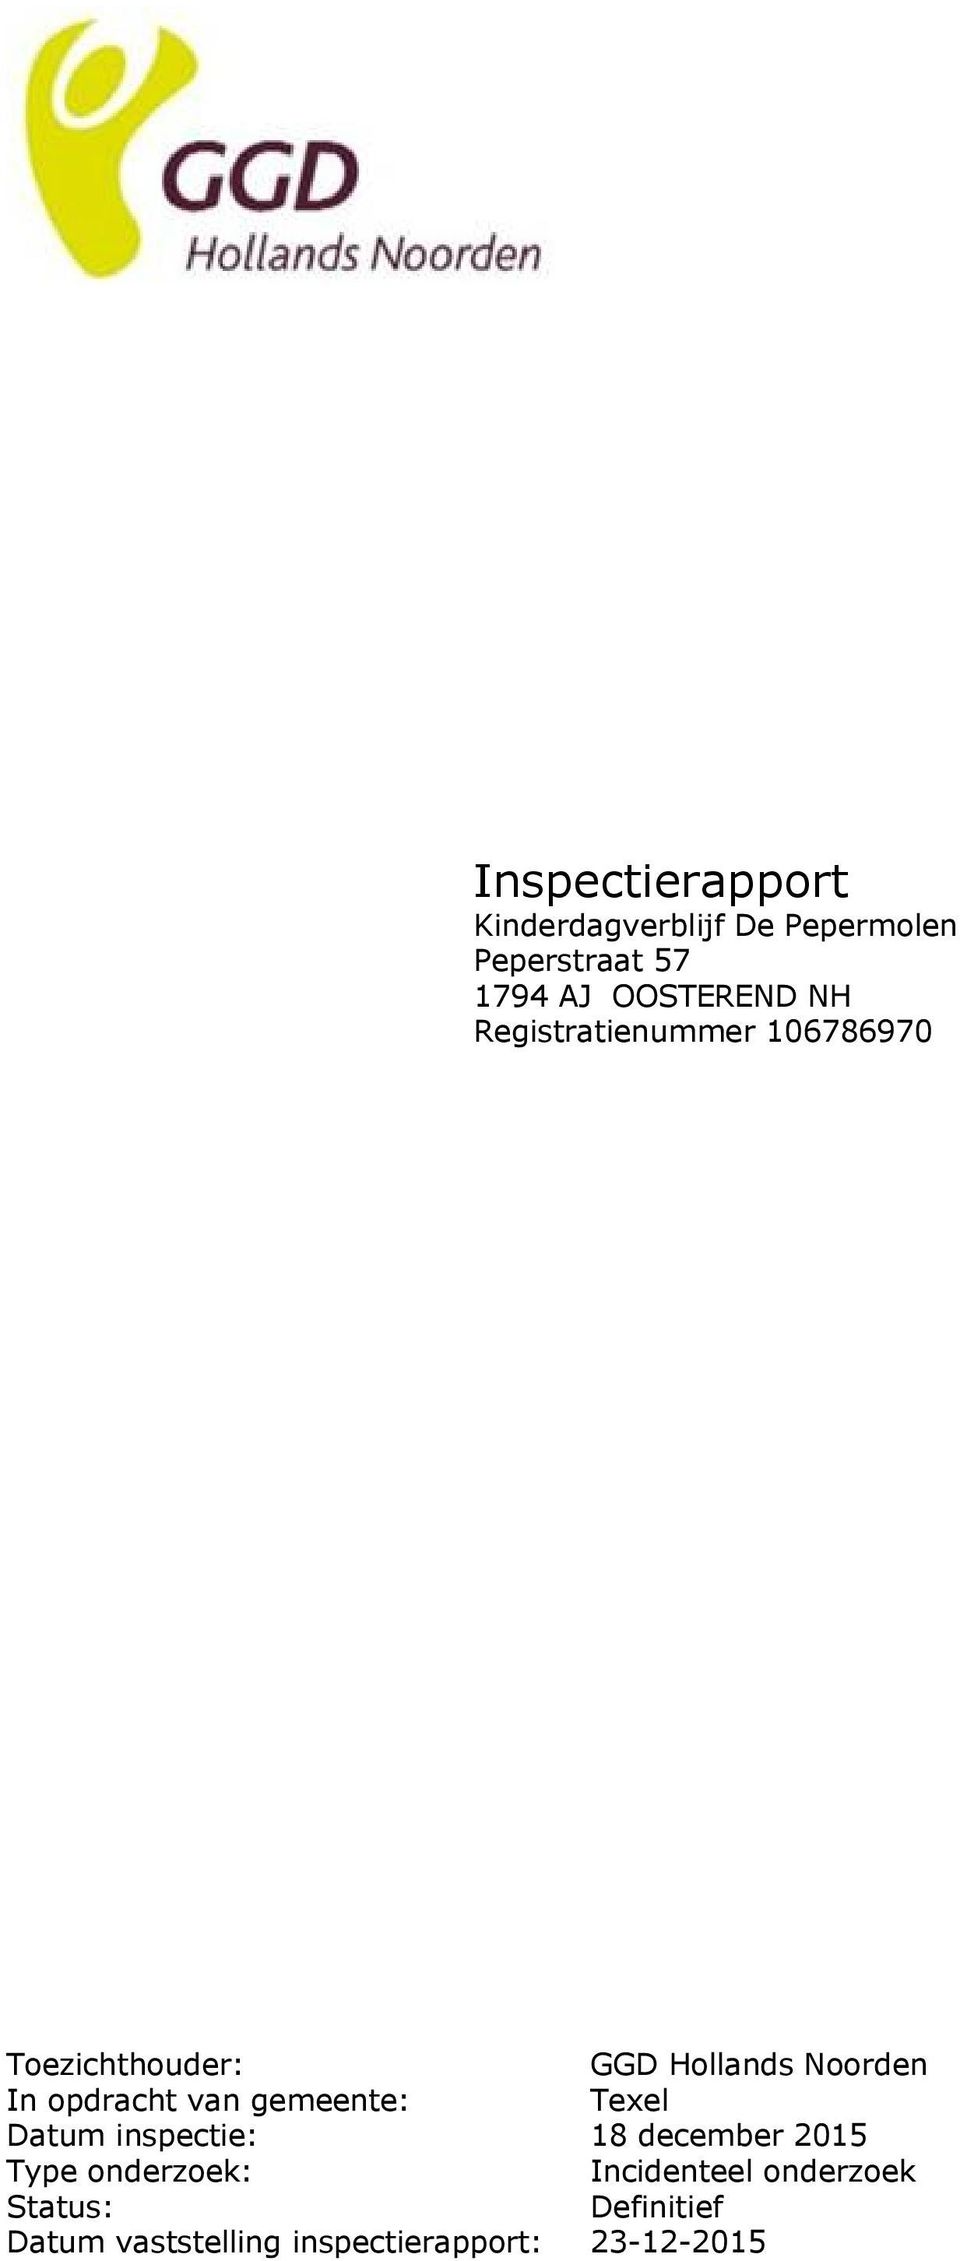 In opdracht van gemeente: Texel Datum inspectie: 18 december 2015 Type